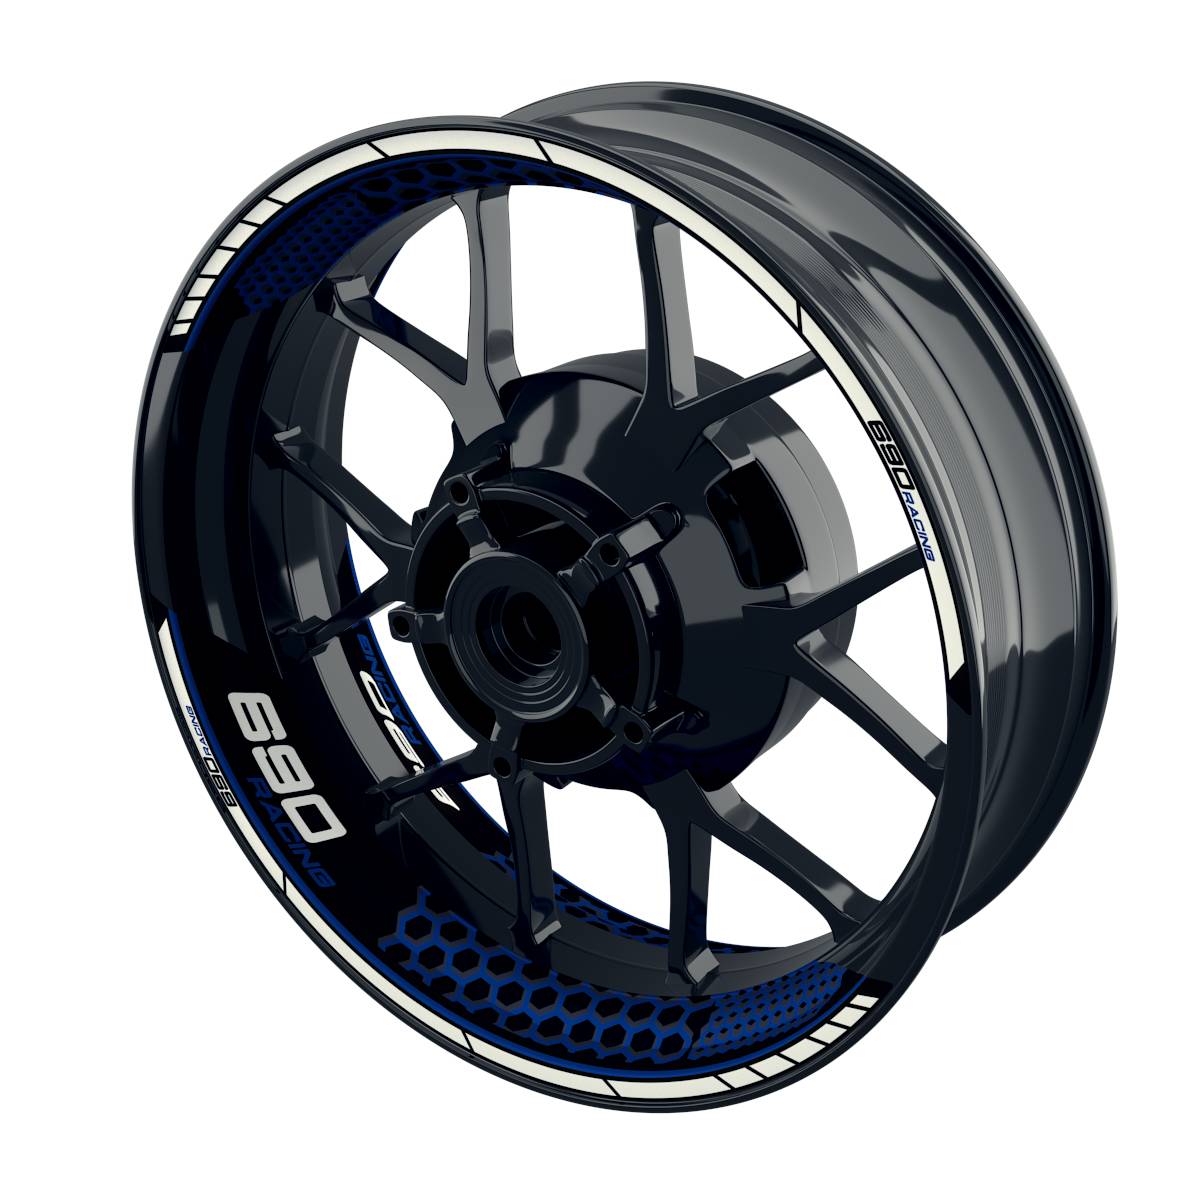 Racing 690 Hexagon Rim Decals Wheelsticker Premium splitted